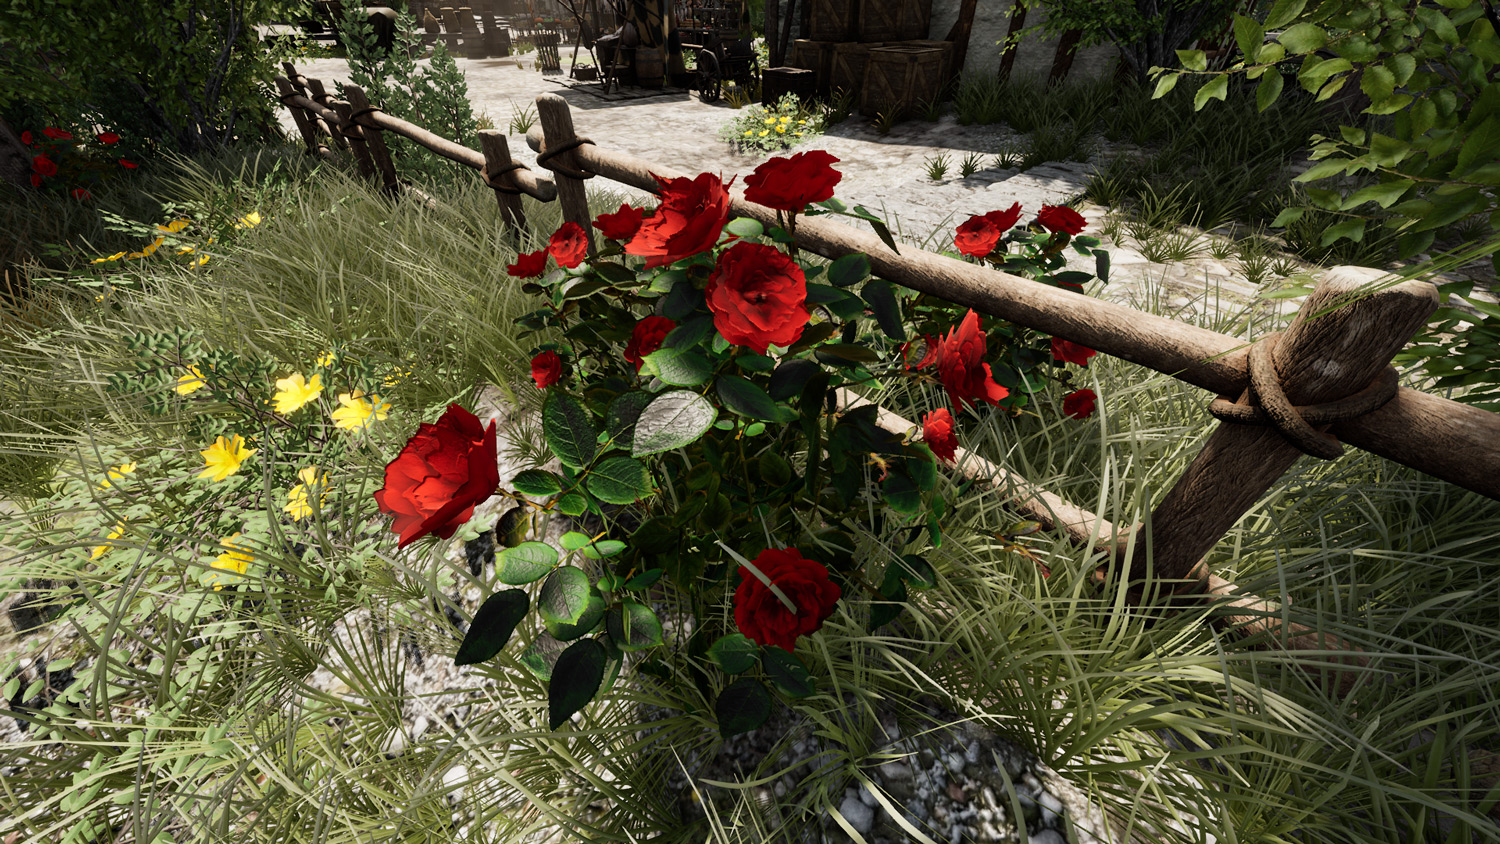 Mortal Online Map - Myrland Rose